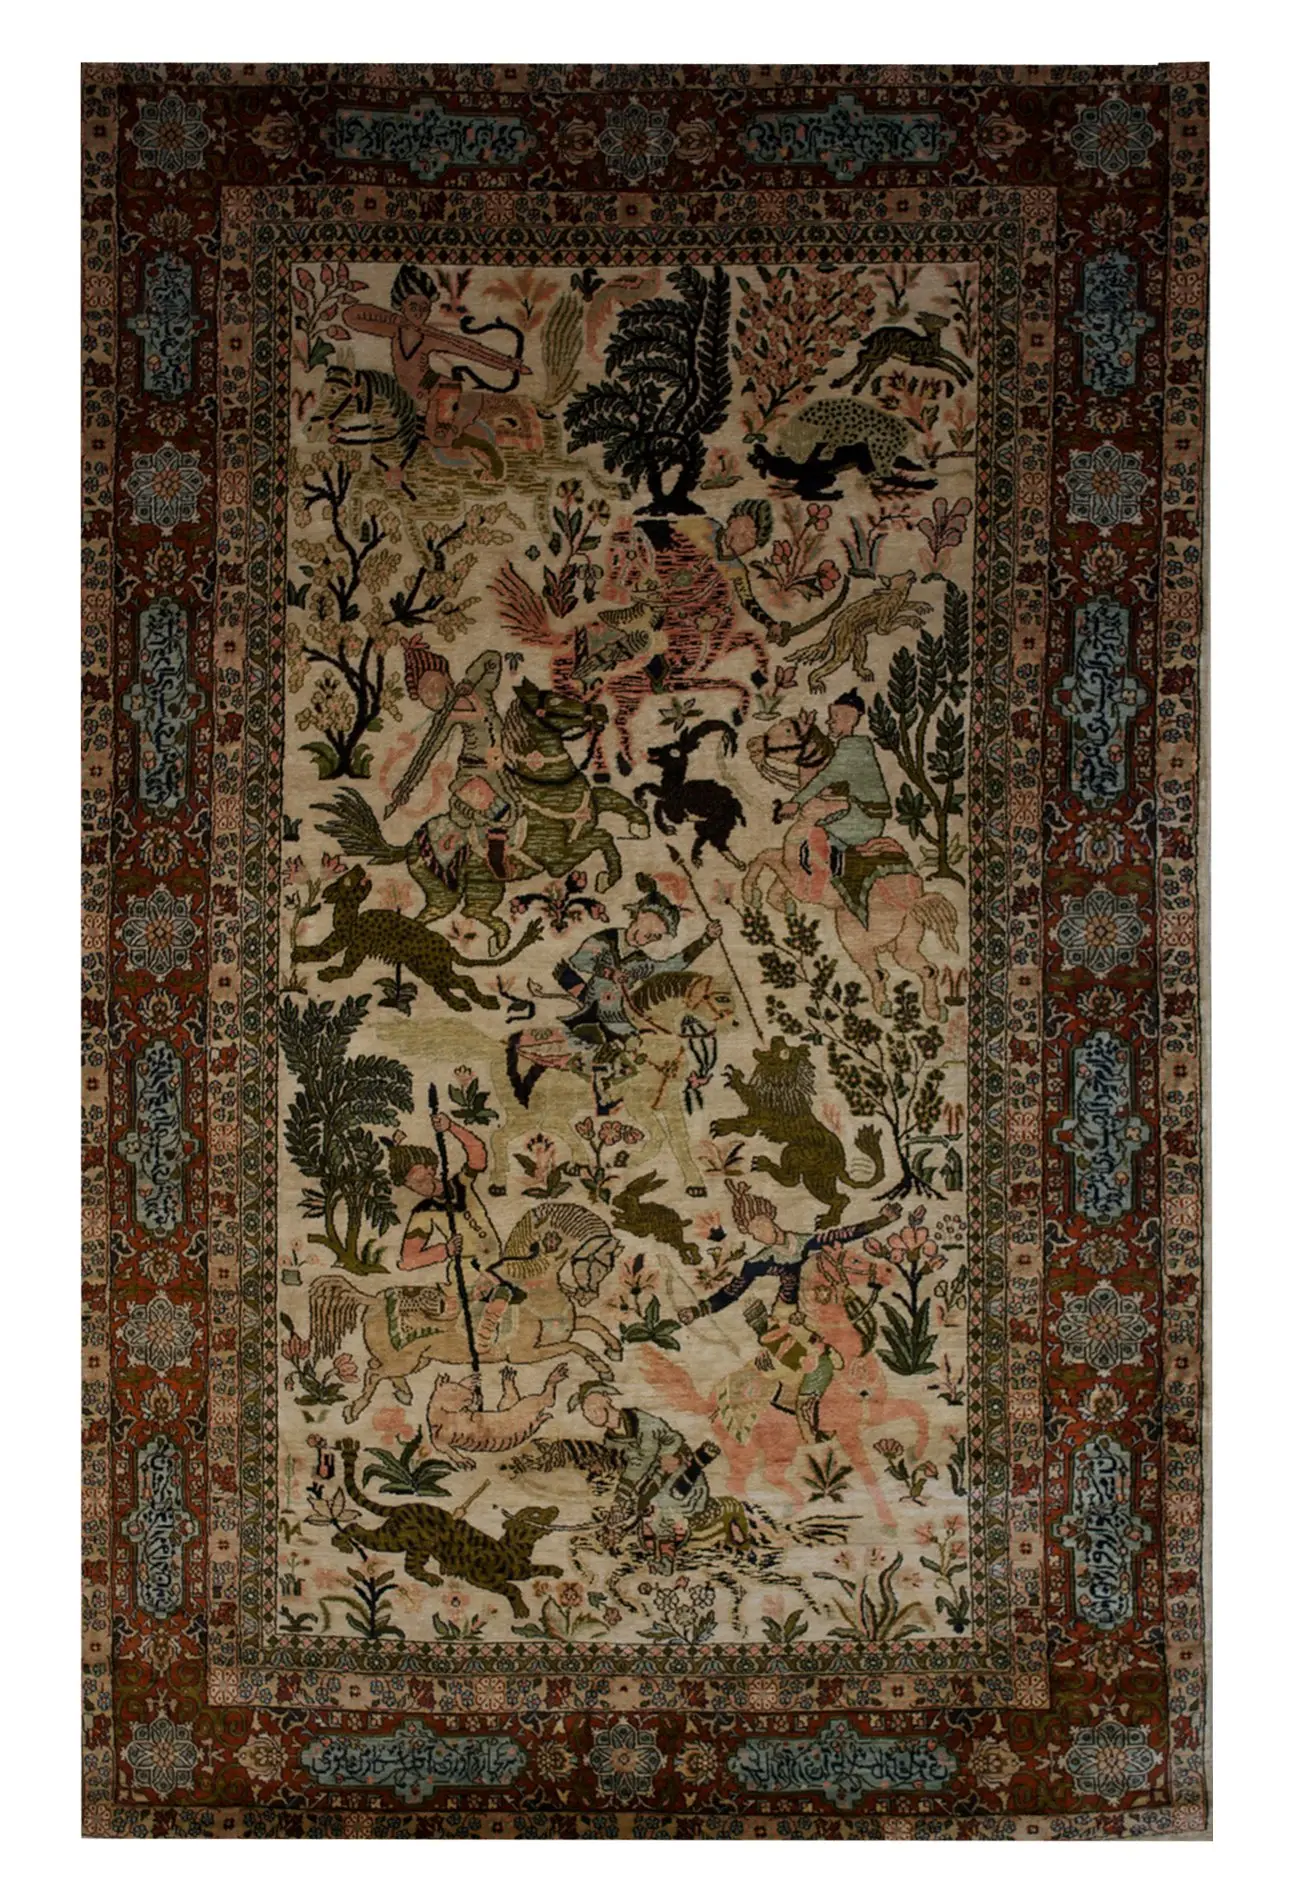 Tabriz Hunting Scene 4' 6" x 7' 2" - Shabahang Royal Carpet